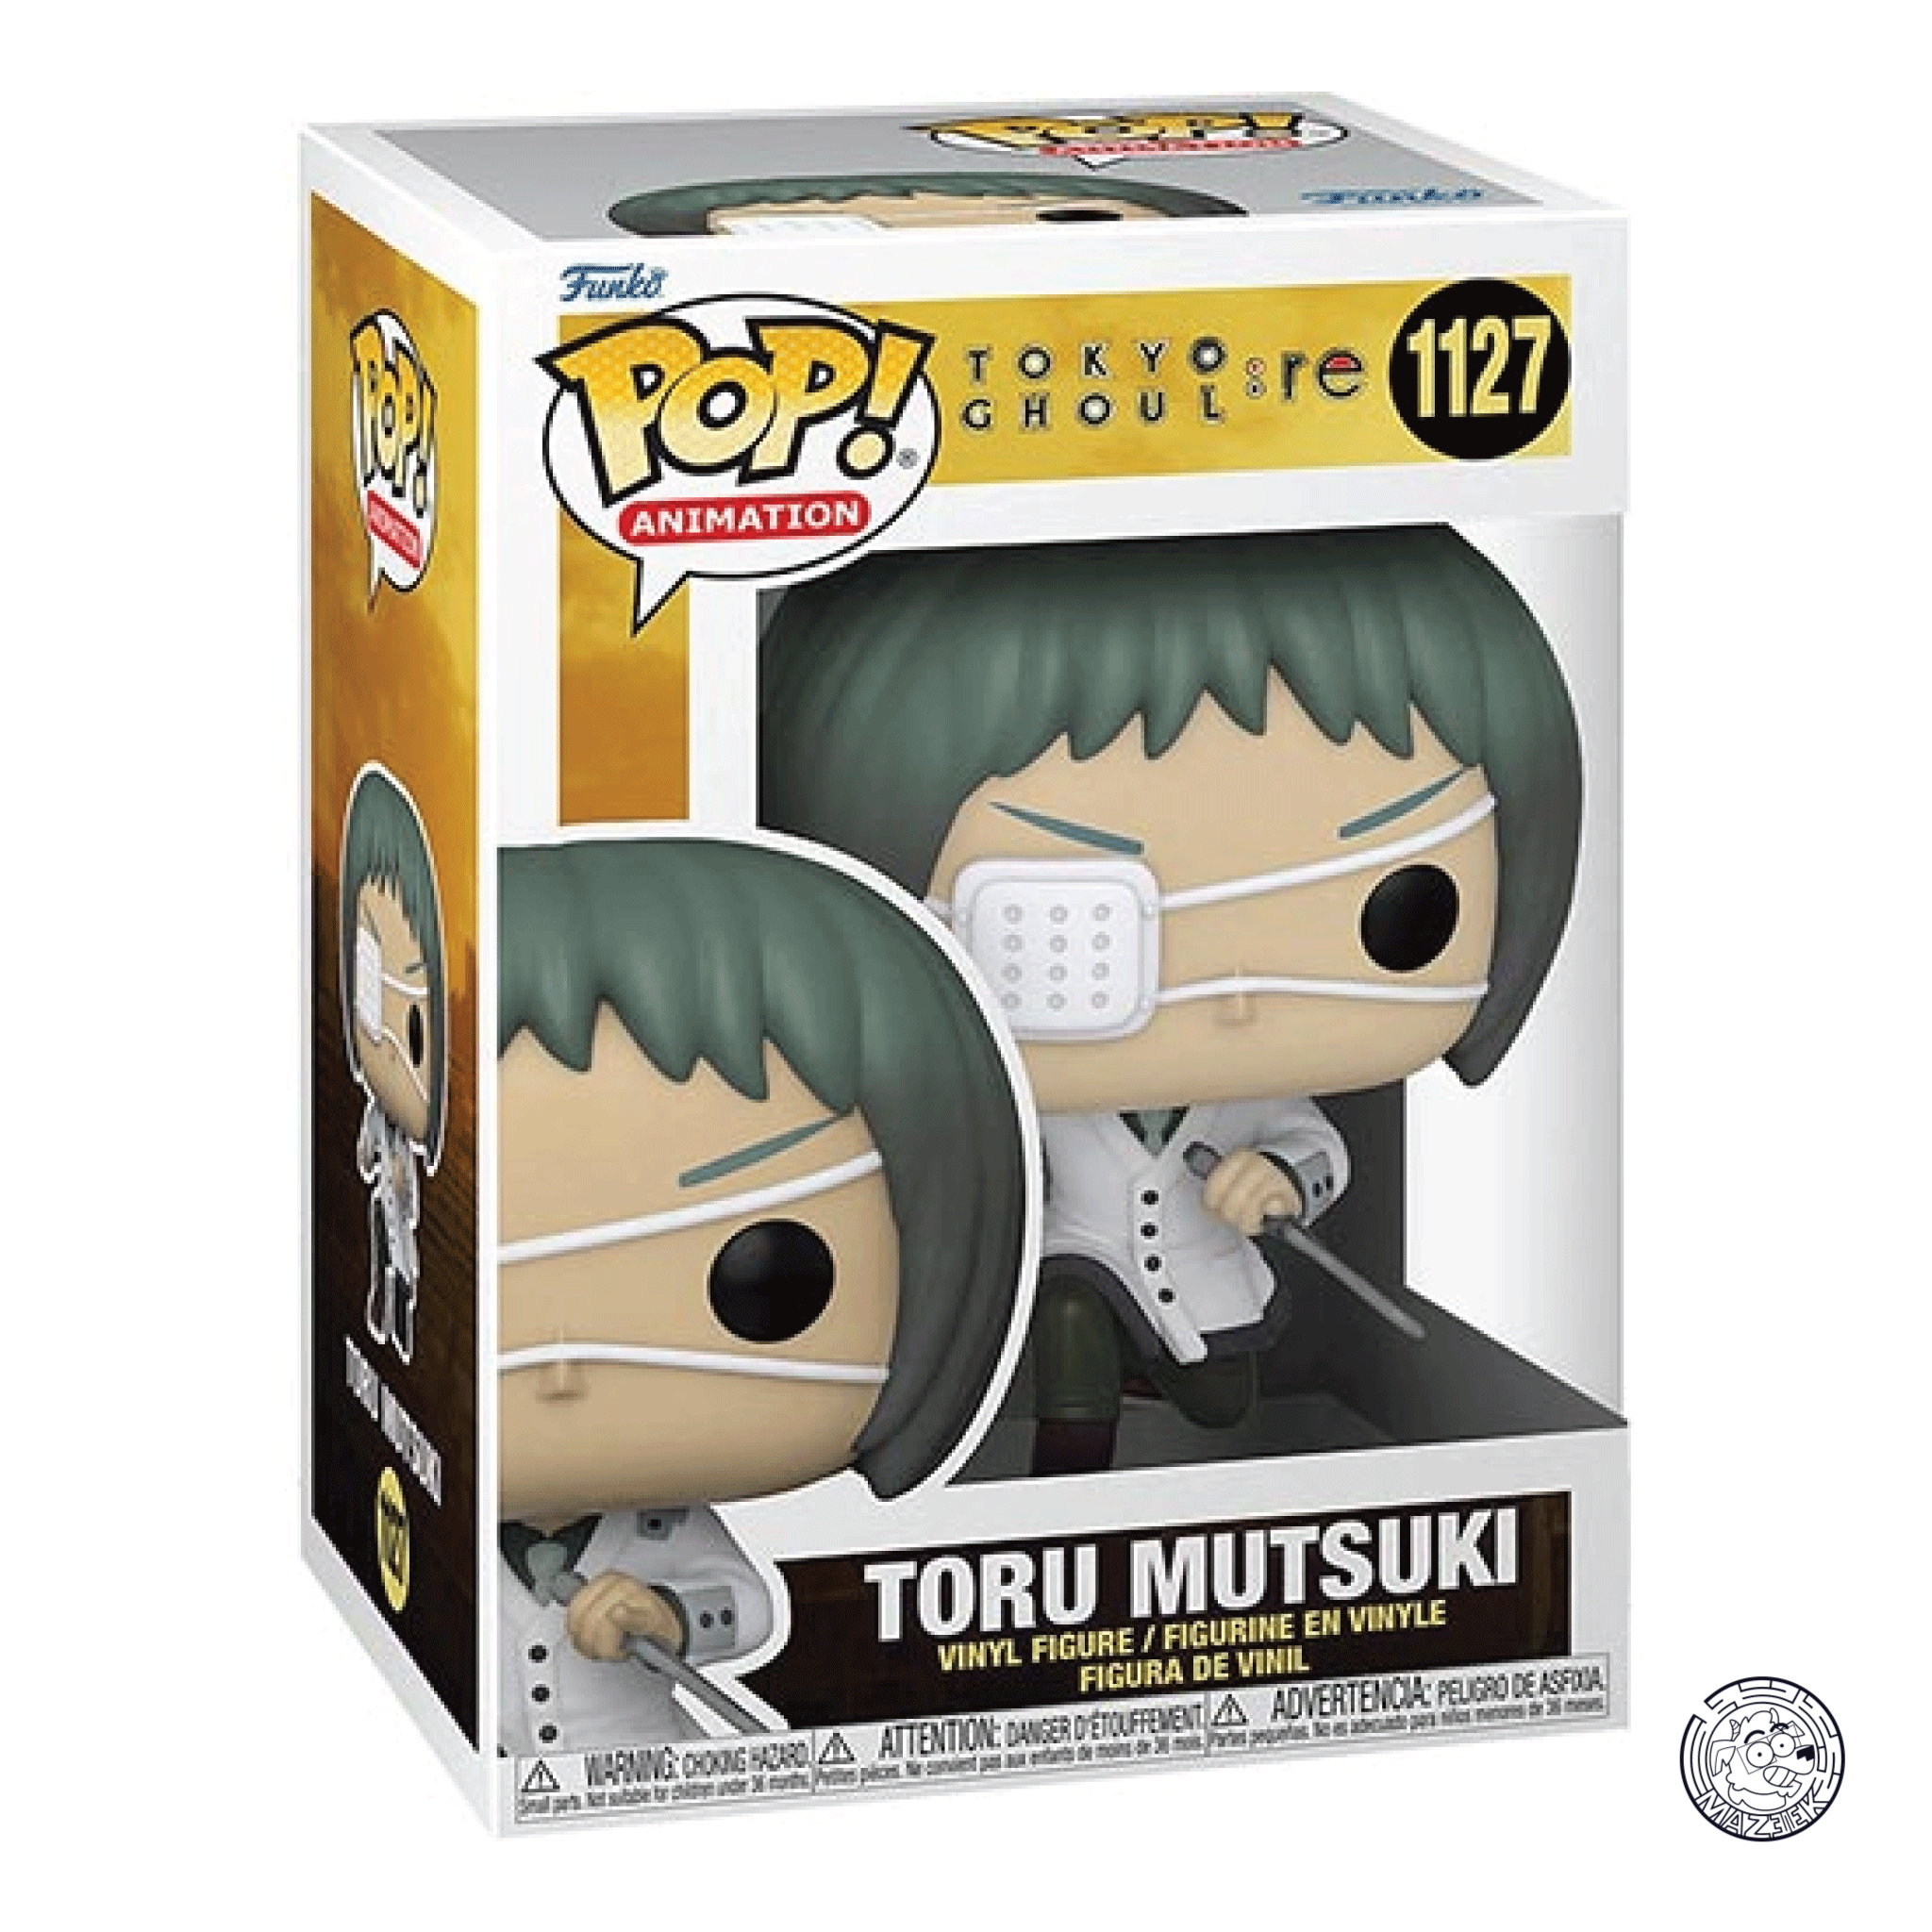 Funko POP! Tokyo Ghoul RE: Toru Mutsuki 1127